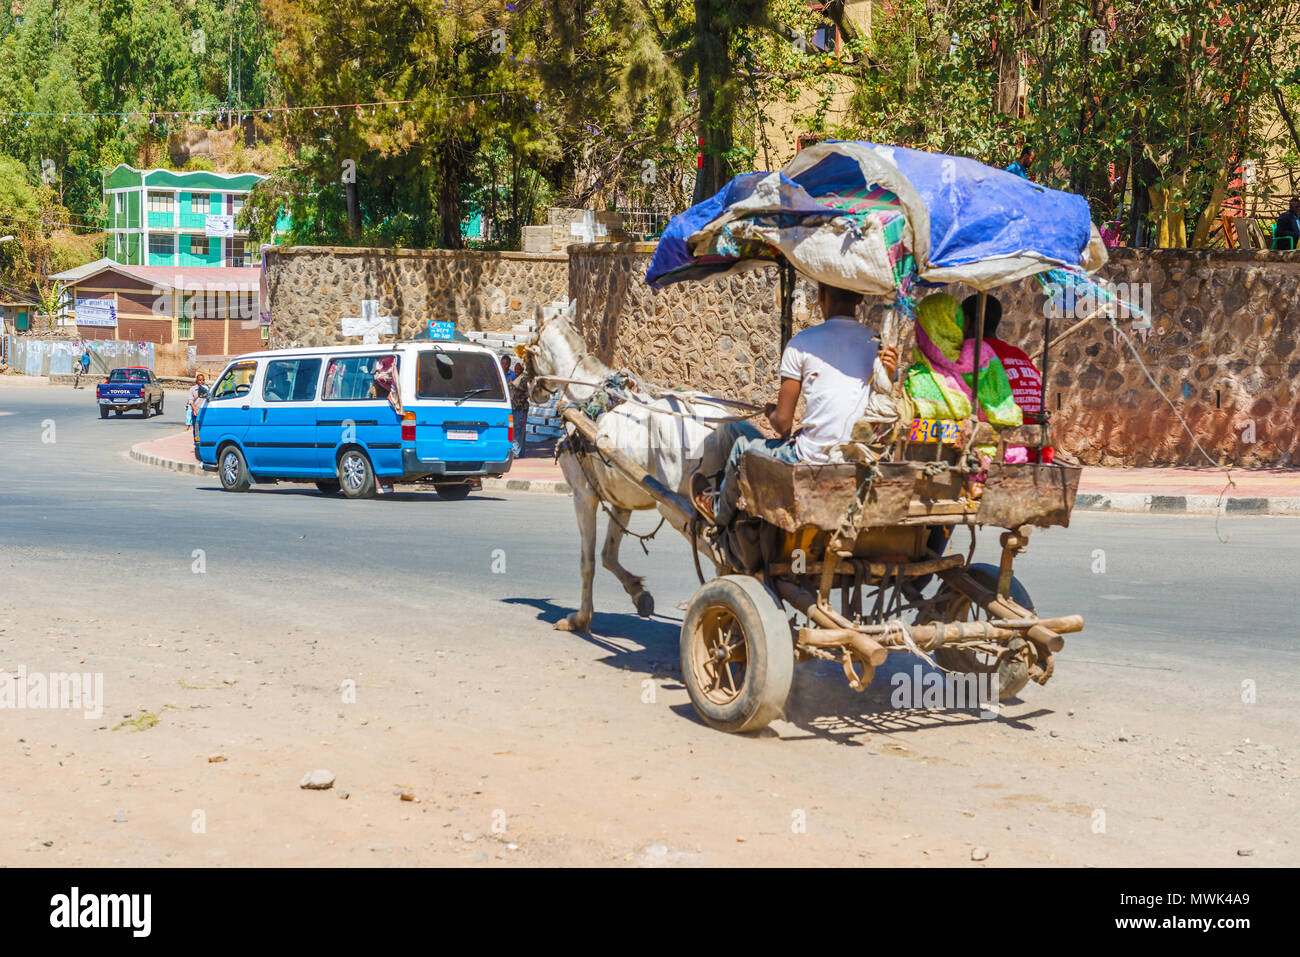 Gondar, Äthiopien - Februar 9, 2015: Straße in Gondar am frühen Nachmittag. Äthiopien. Menschen reiten in die Karre von Esel gezogen. Stockfoto